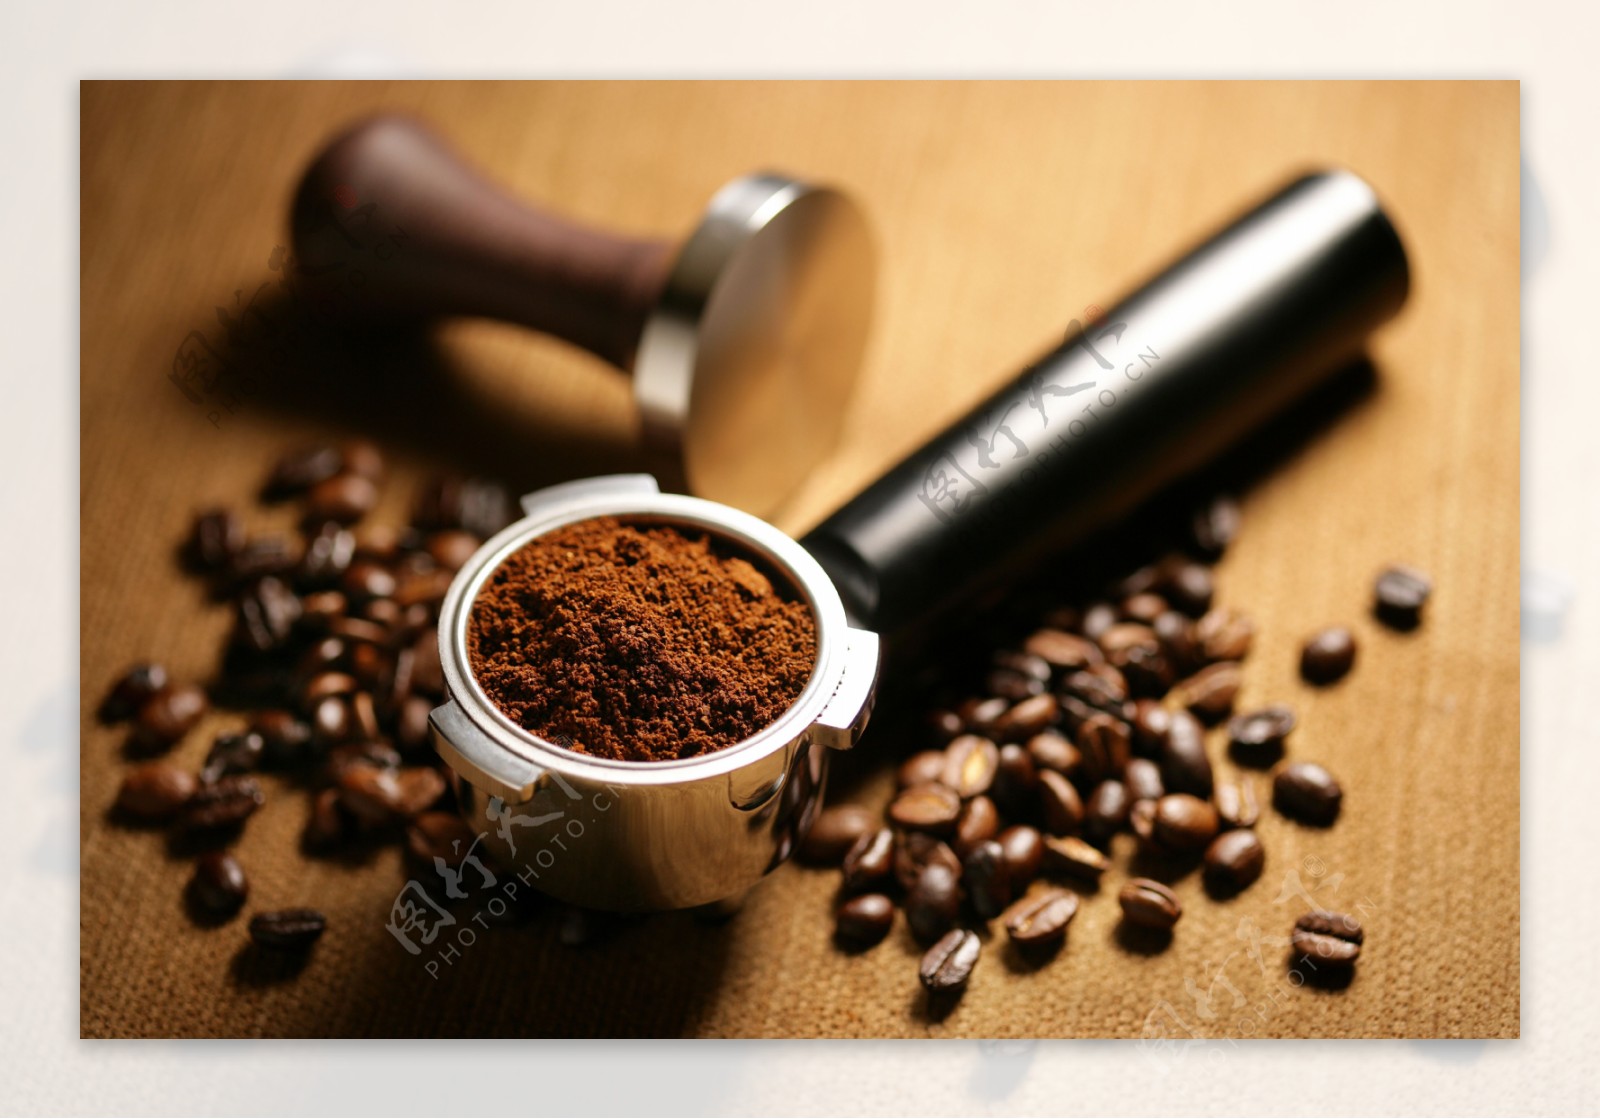 咖啡豆和咖啡粉末图片